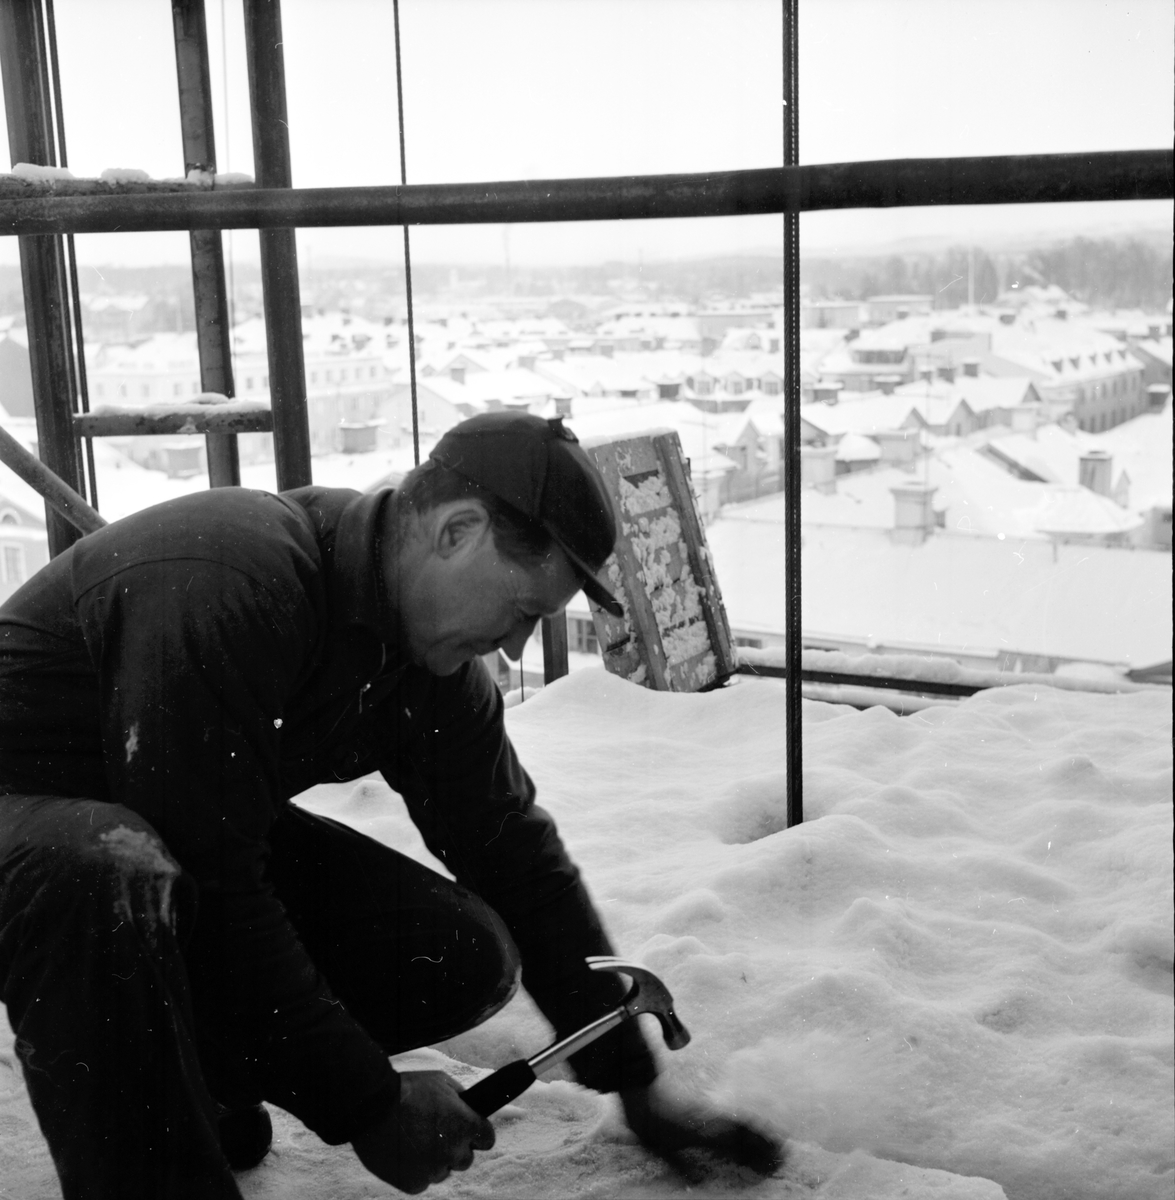 Kyliga arbetsplatser,
19 Jan 1966
Man på byggställning.